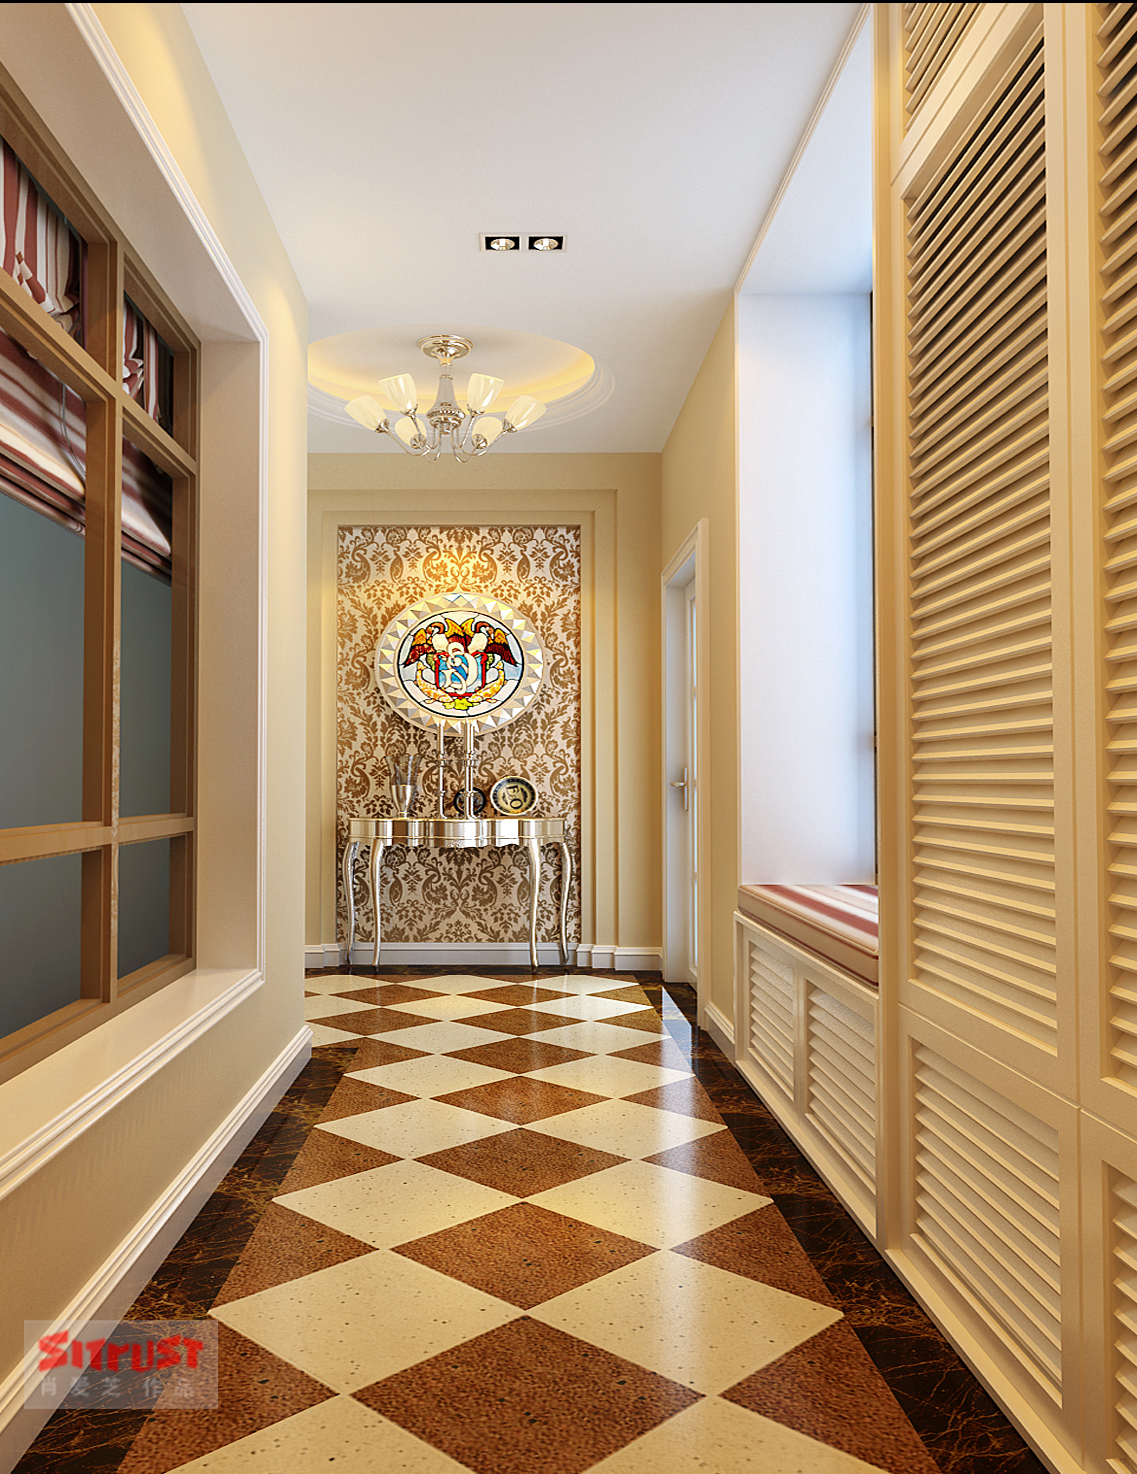 简约 欧式 混搭 别墅 客厅图片来自北京实创装饰集团在欧式经典287平别墅案例的分享